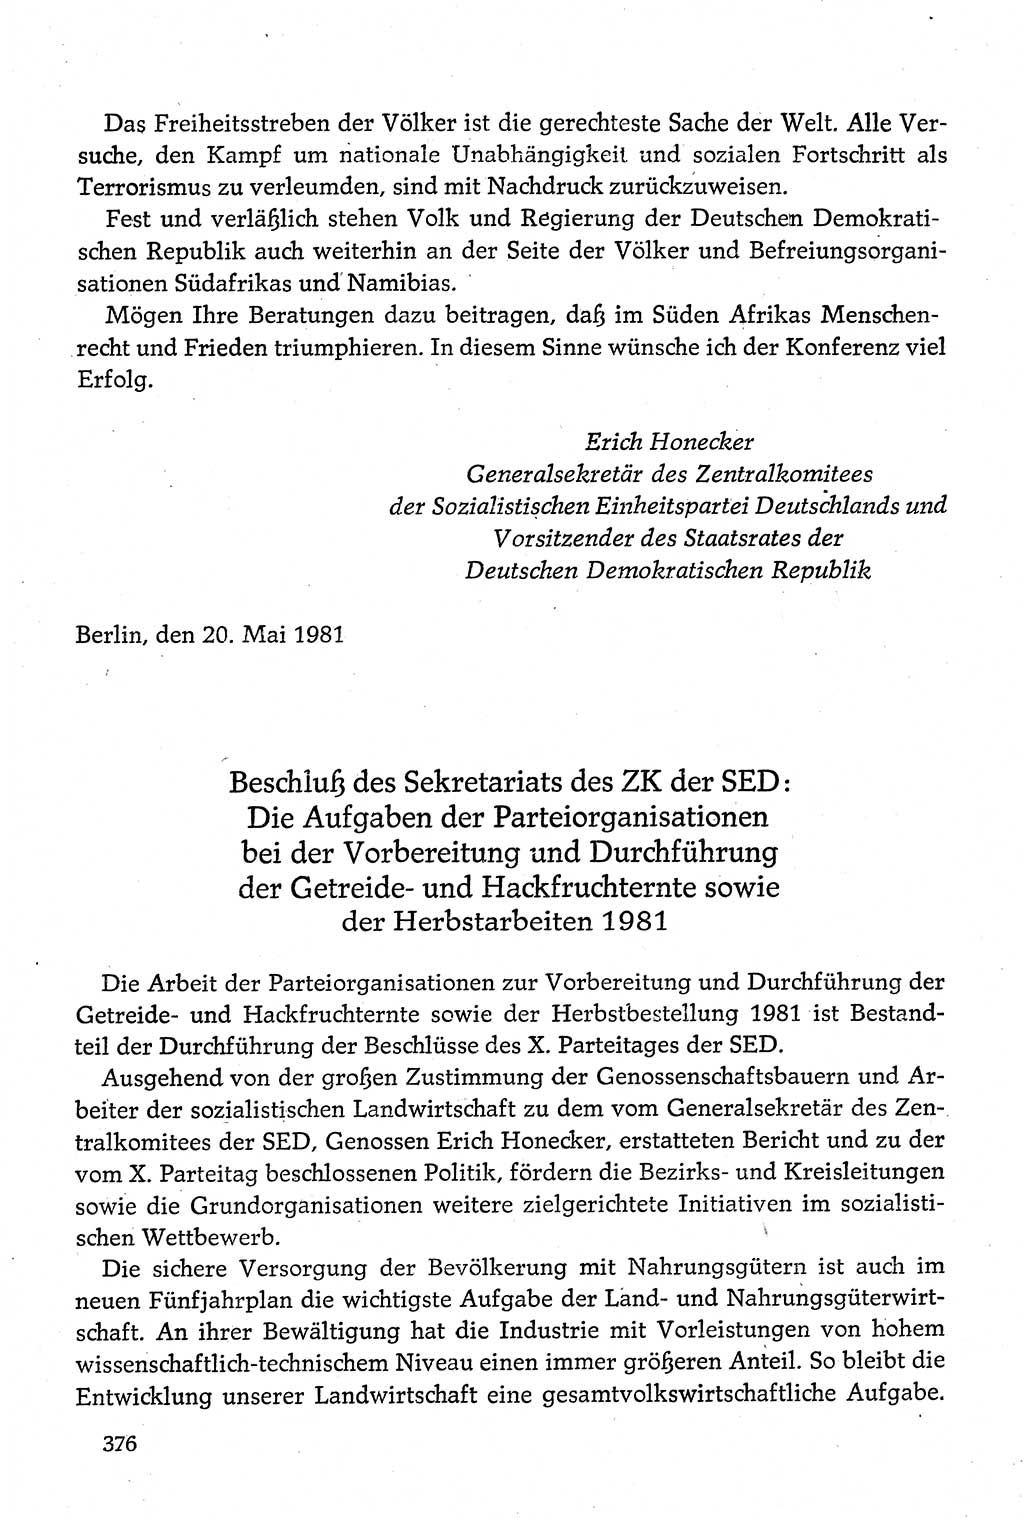 Dokumente der Sozialistischen Einheitspartei Deutschlands (SED) [Deutsche Demokratische Republik (DDR)] 1980-1981, Seite 376 (Dok. SED DDR 1980-1981, S. 376)